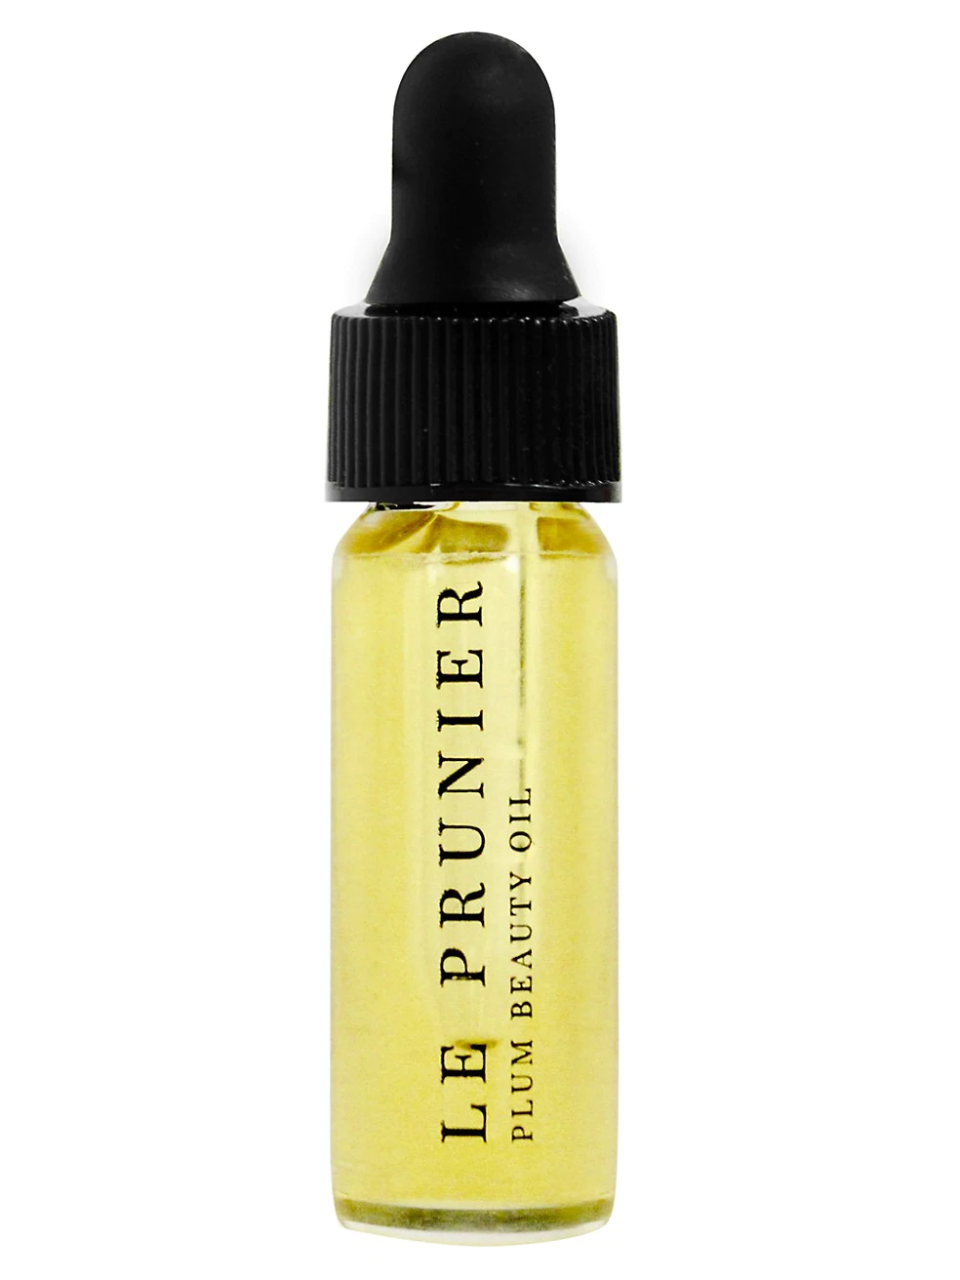 Le Prunier Plum Beauty Oil | SaksFifthAvenue | Beauty oil, Oils, Marula oil